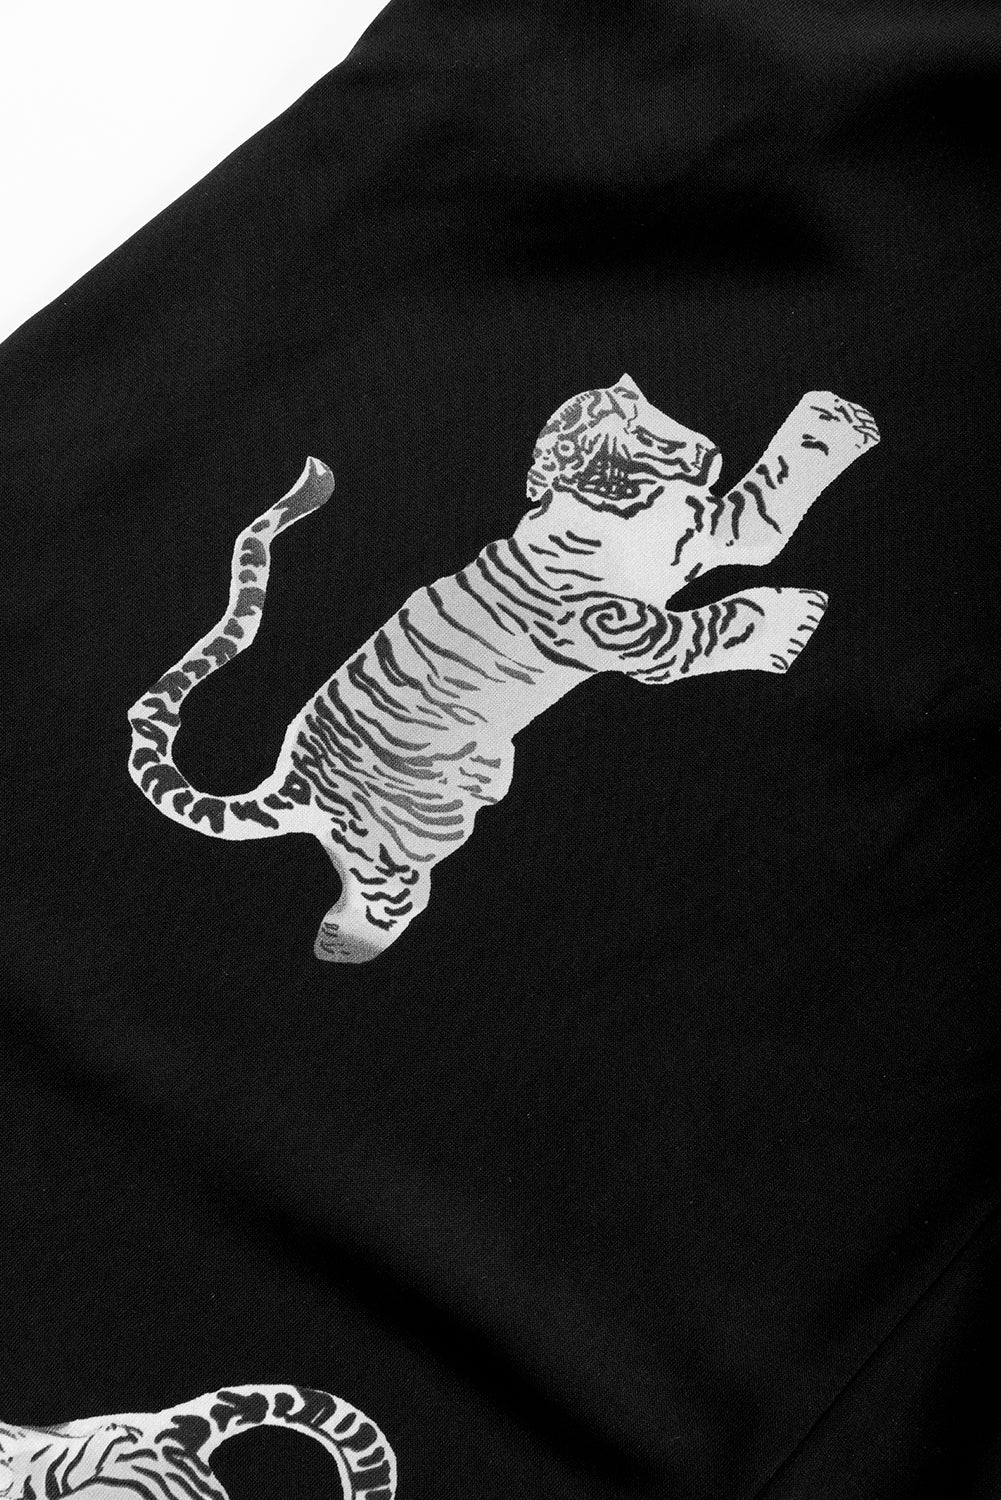 Prevelika košulja s uzorkom crnog tigra 3/4 rukava